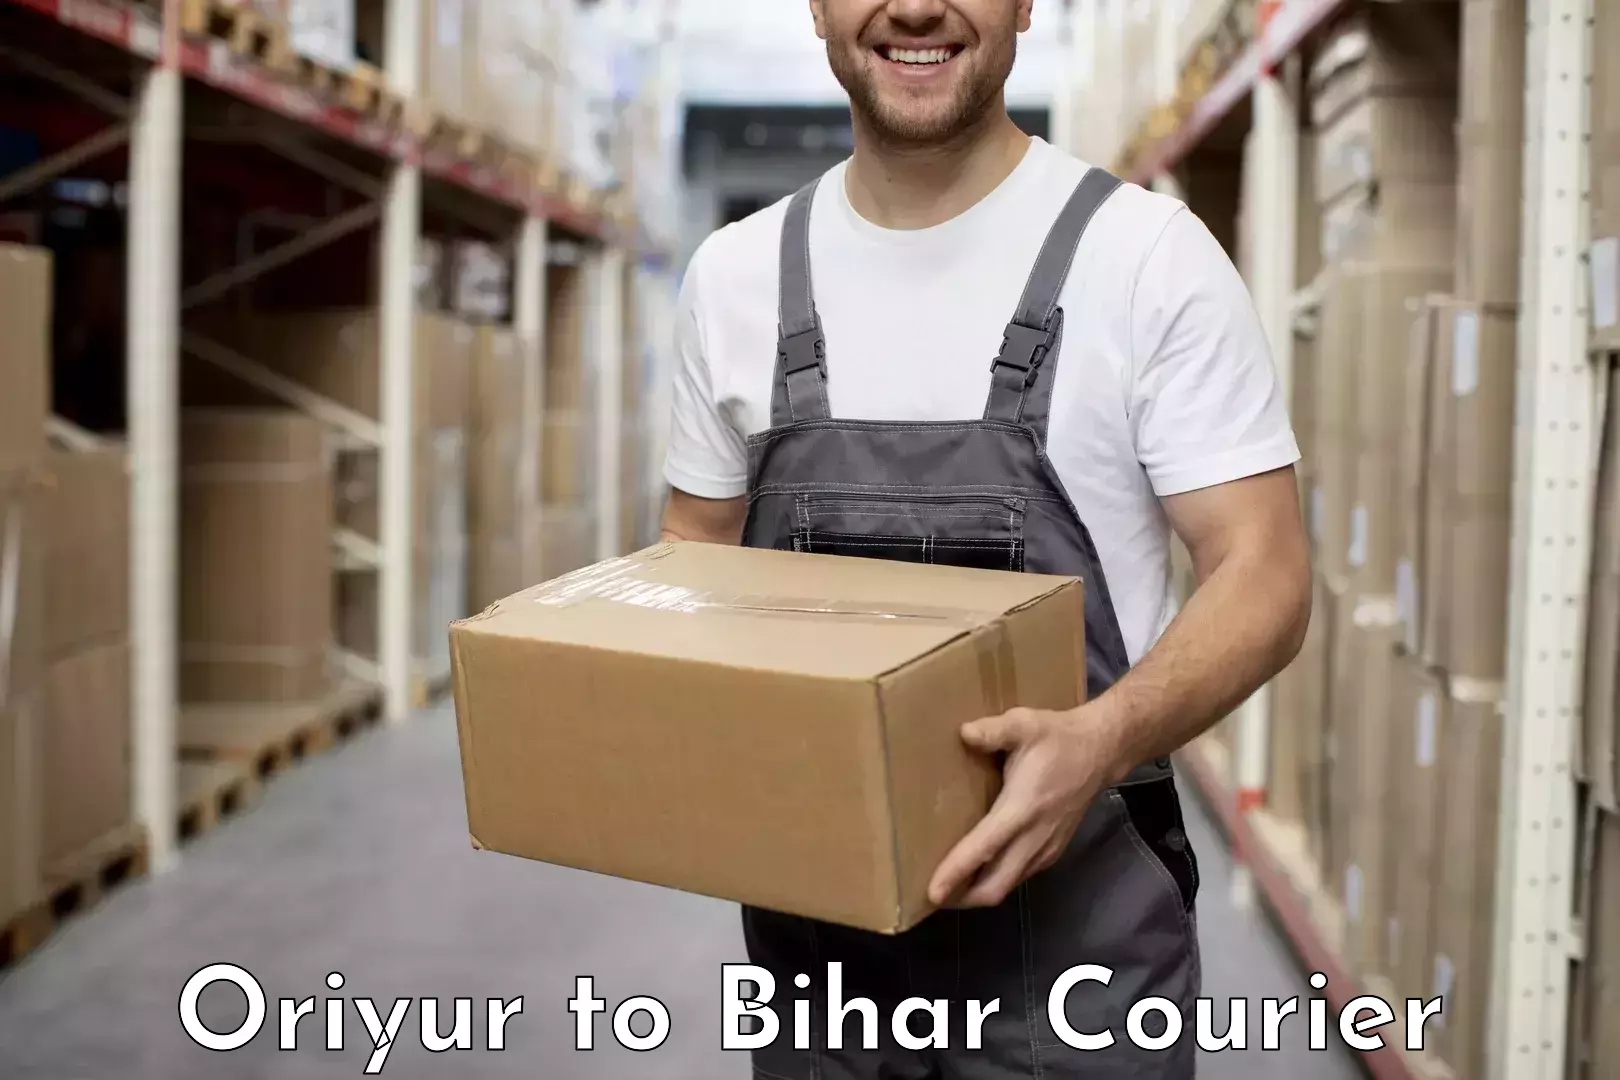 Overnight delivery services Oriyur to Barhiya